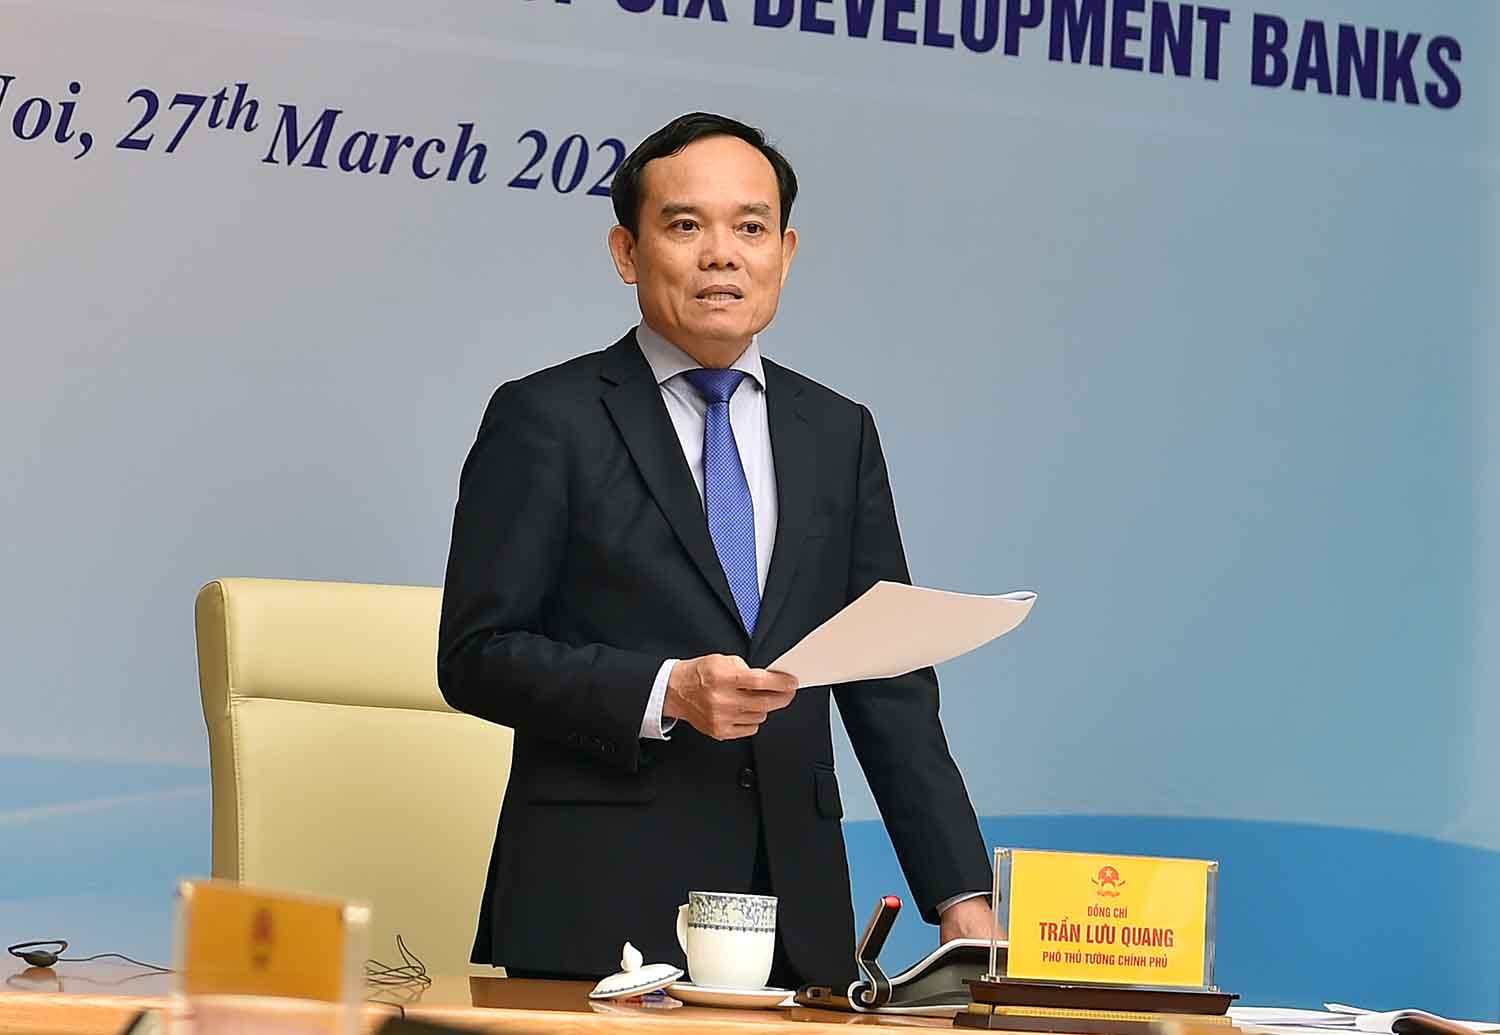 Việt Nam và các nhà tài trợ đồng thuận về sự cần thiết phải hài hoà hoá thủ tục- Ảnh 2.